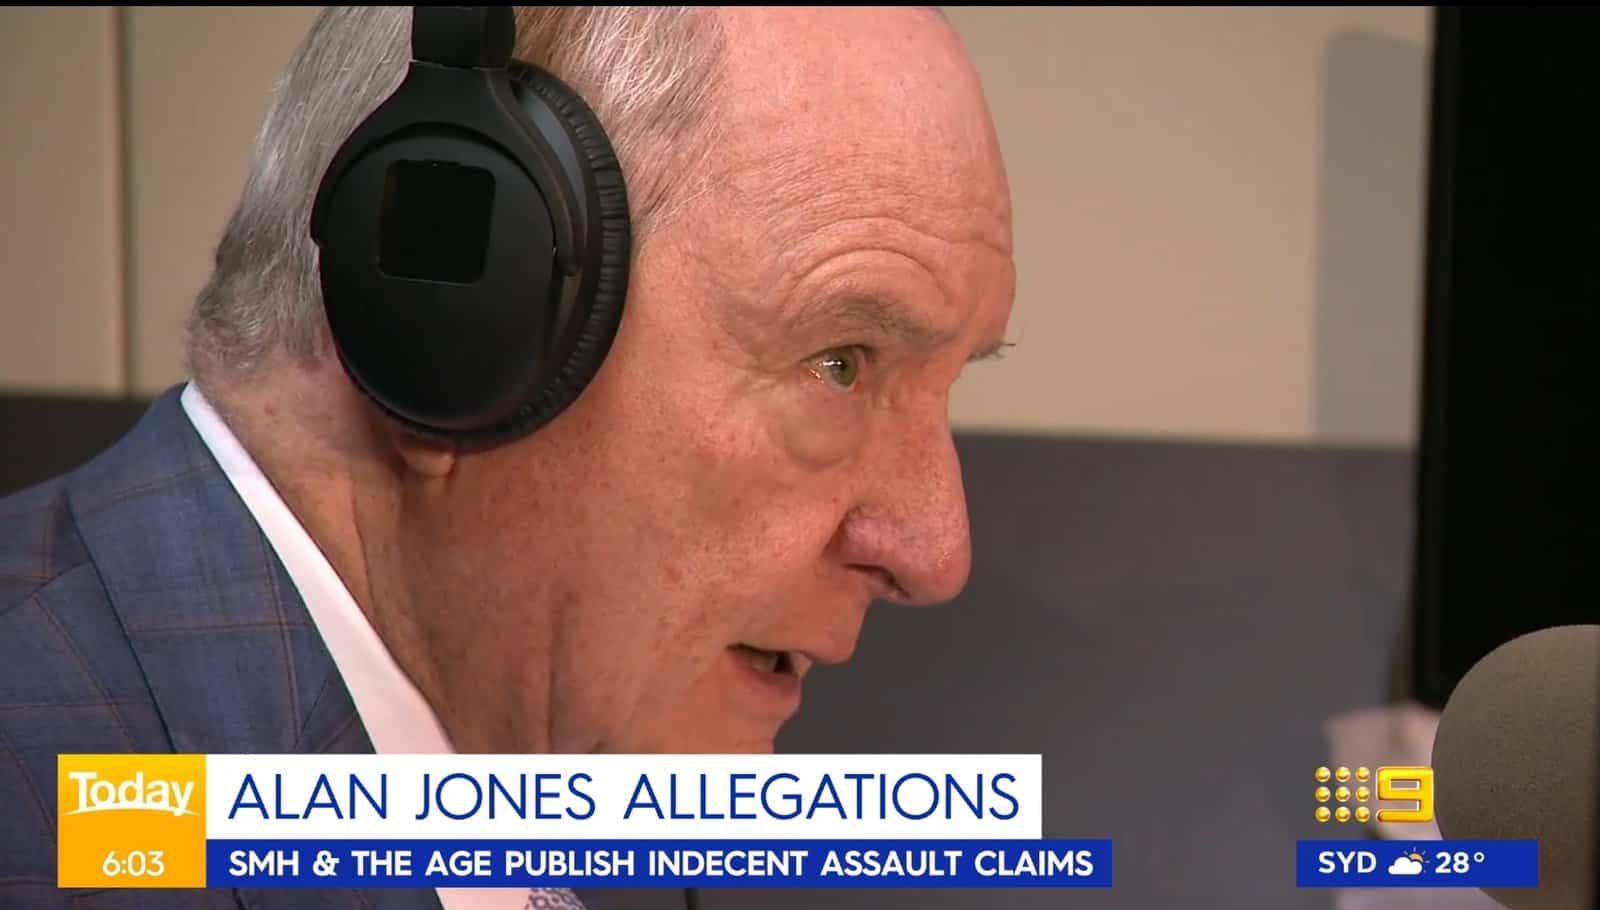 Former 2gb Broadcaster Alan Jones Denies Multiple Allegations